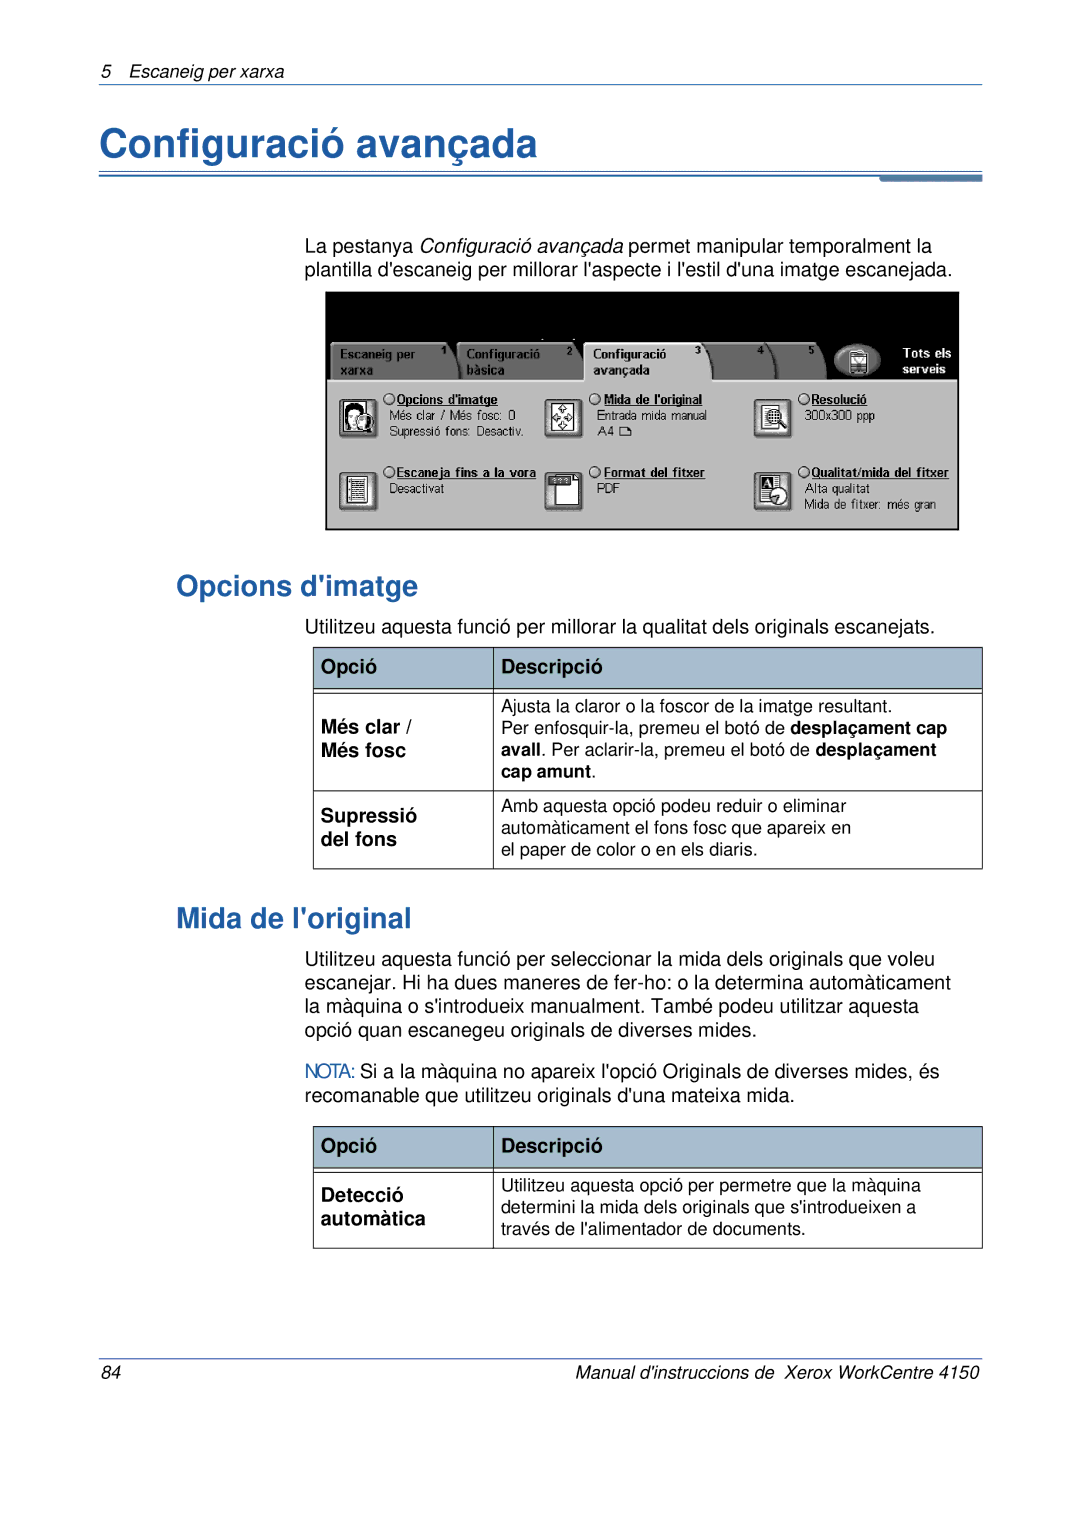 Xerox 5.0 24.03.06 manual Configuració avançada, Opcions dimatge 